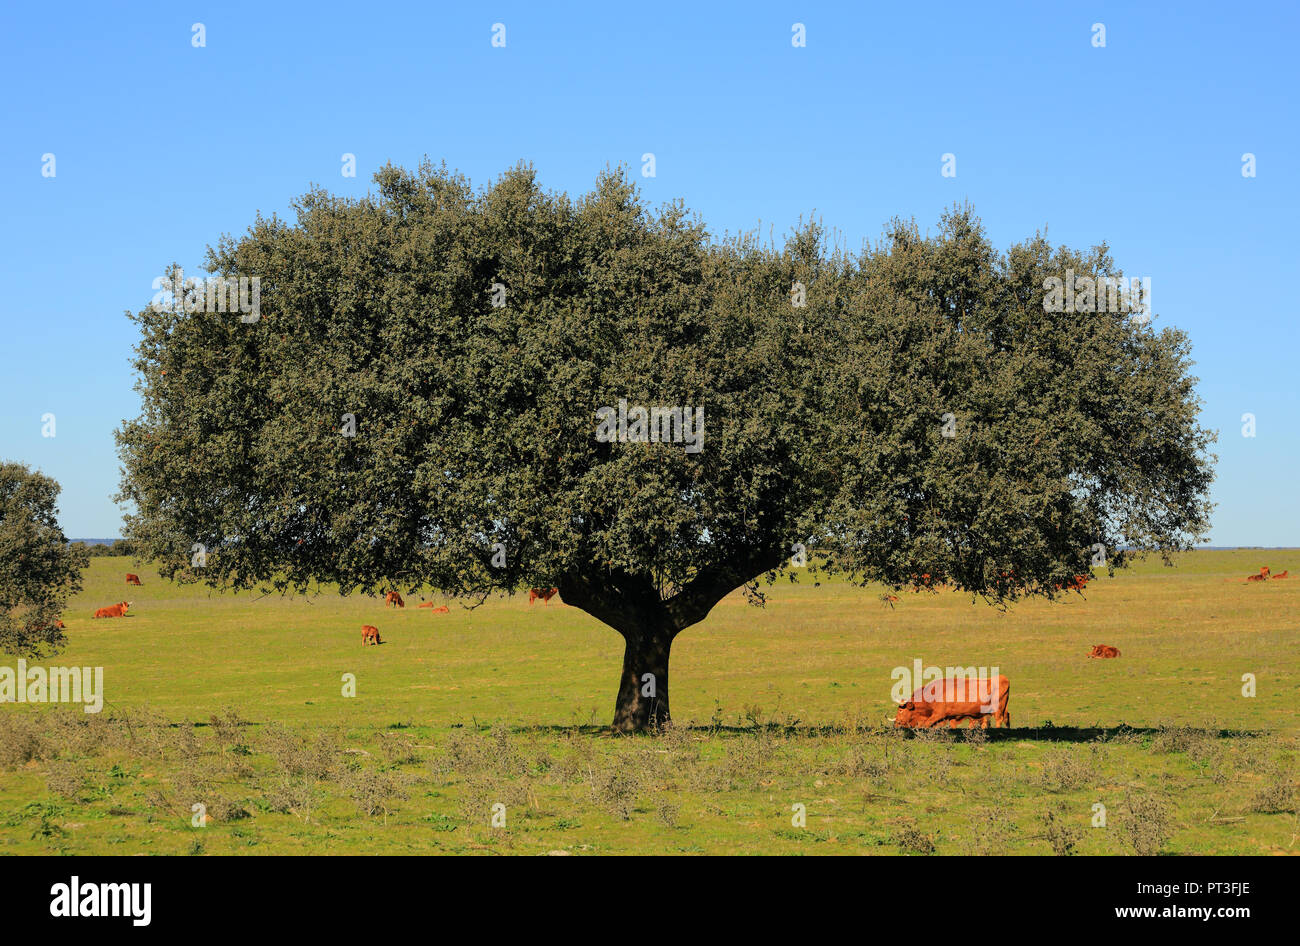 Portogallo Alentejo, Evora. Cork Oak tree - Quercus suber, in un campo con bestiame al pascolo. Foto Stock